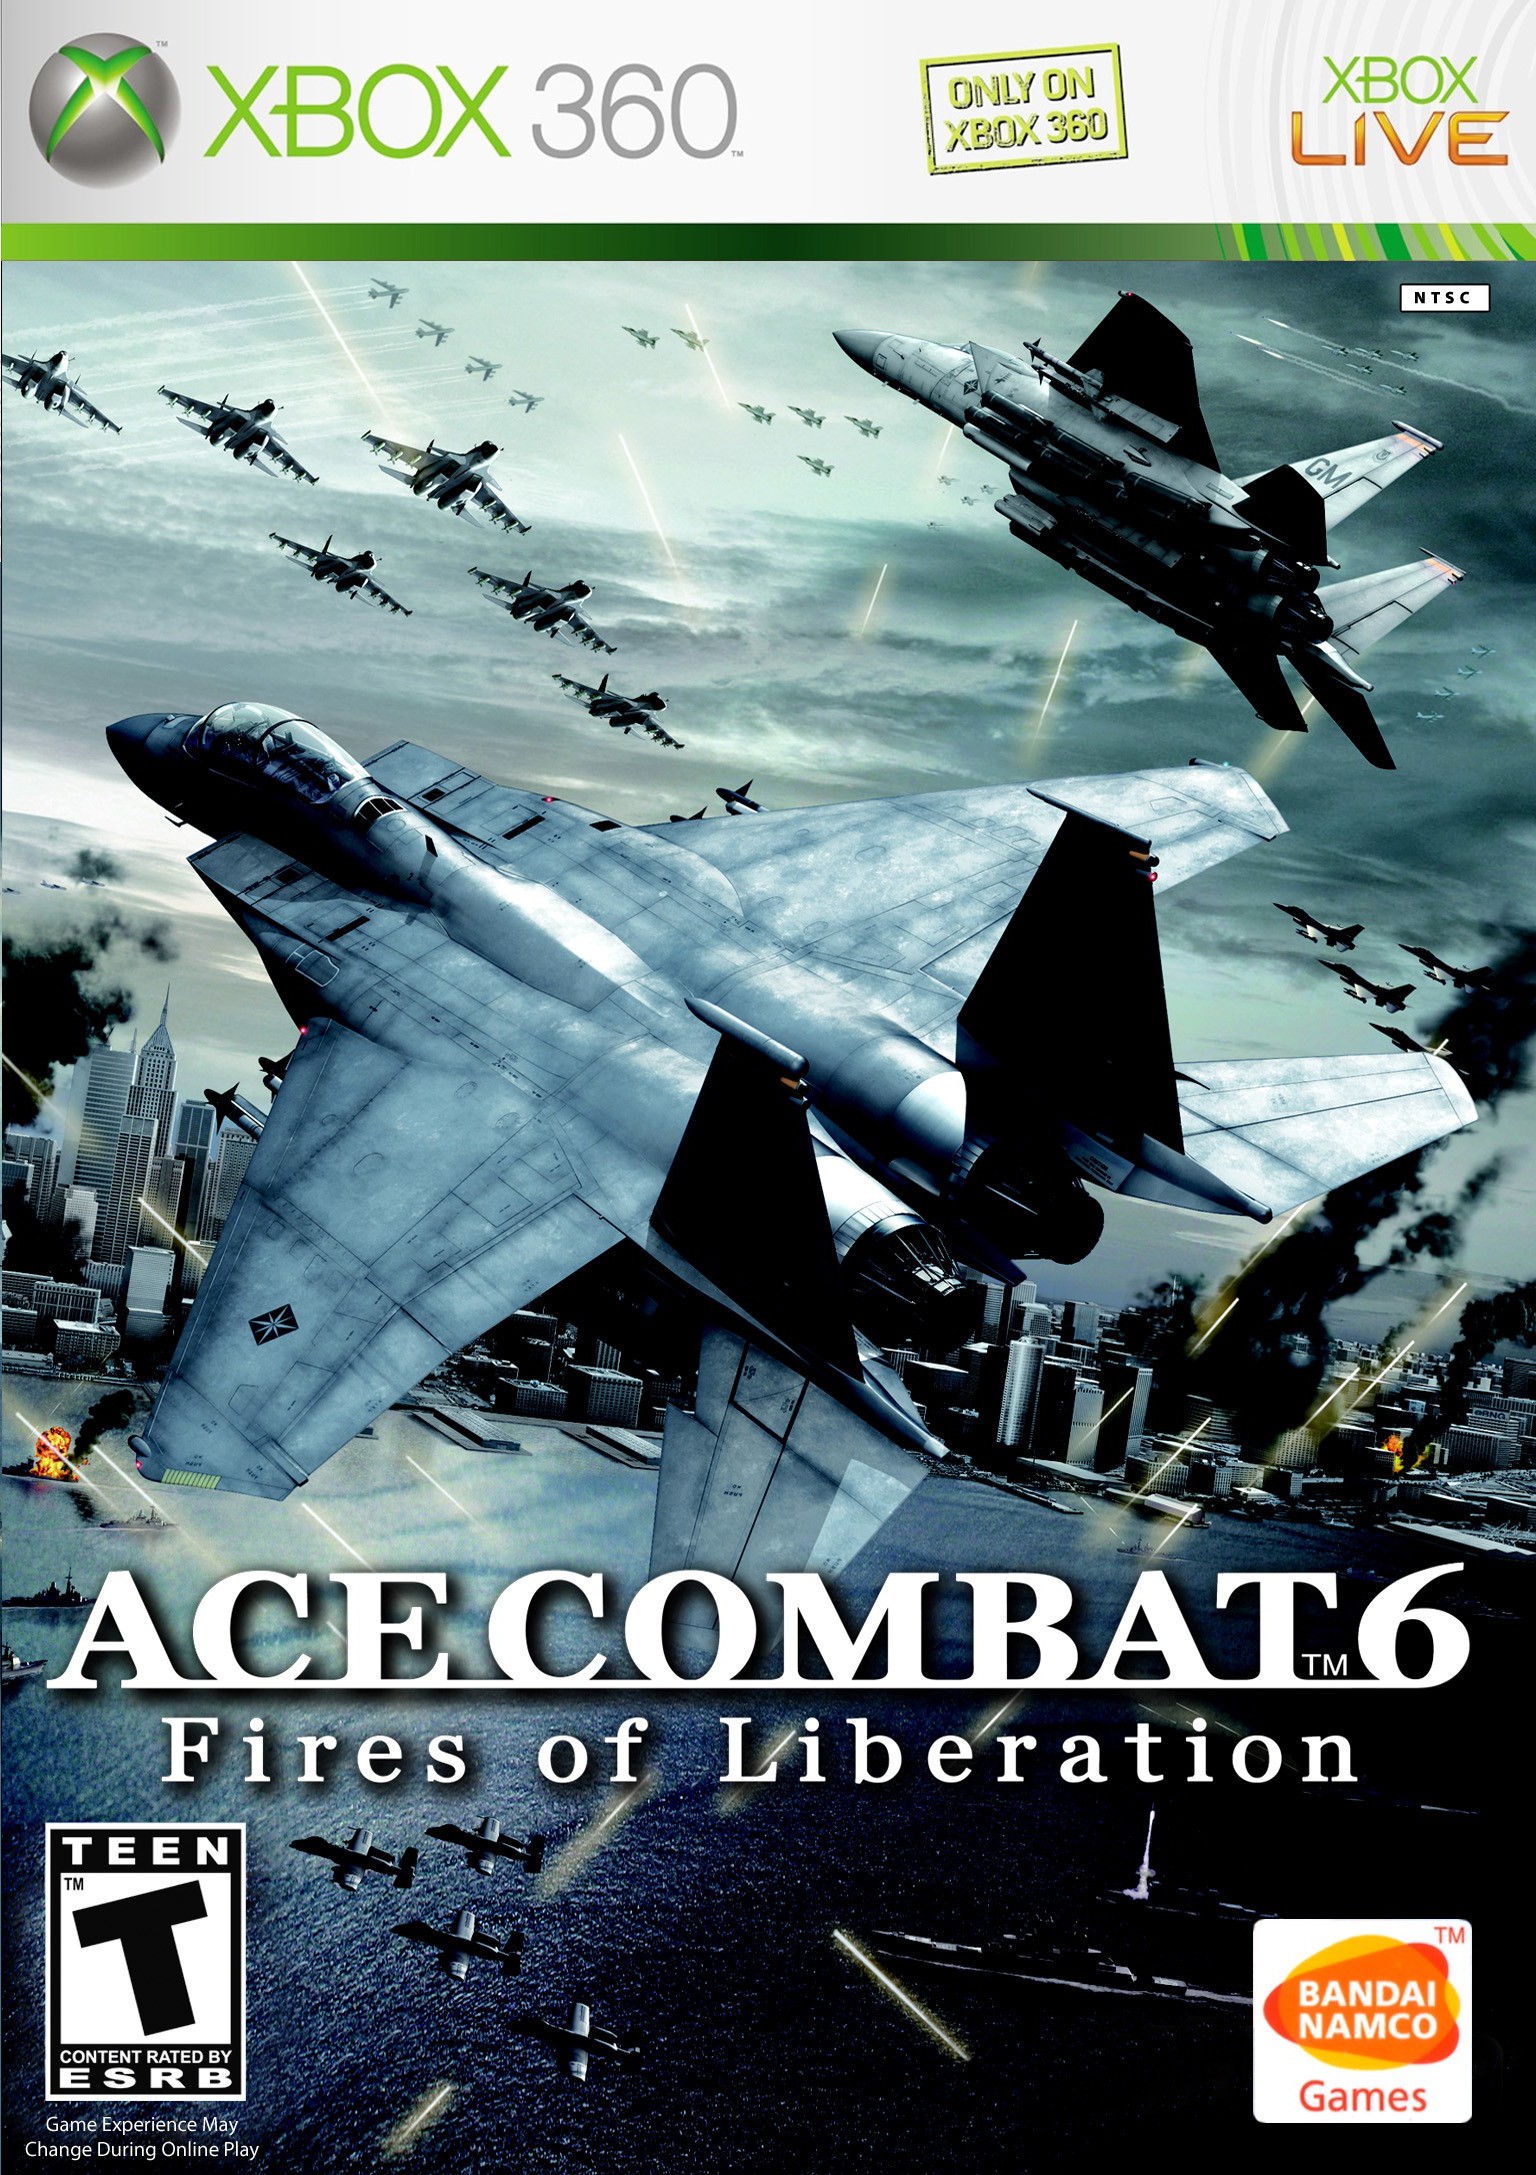 Ace combat 6 full games